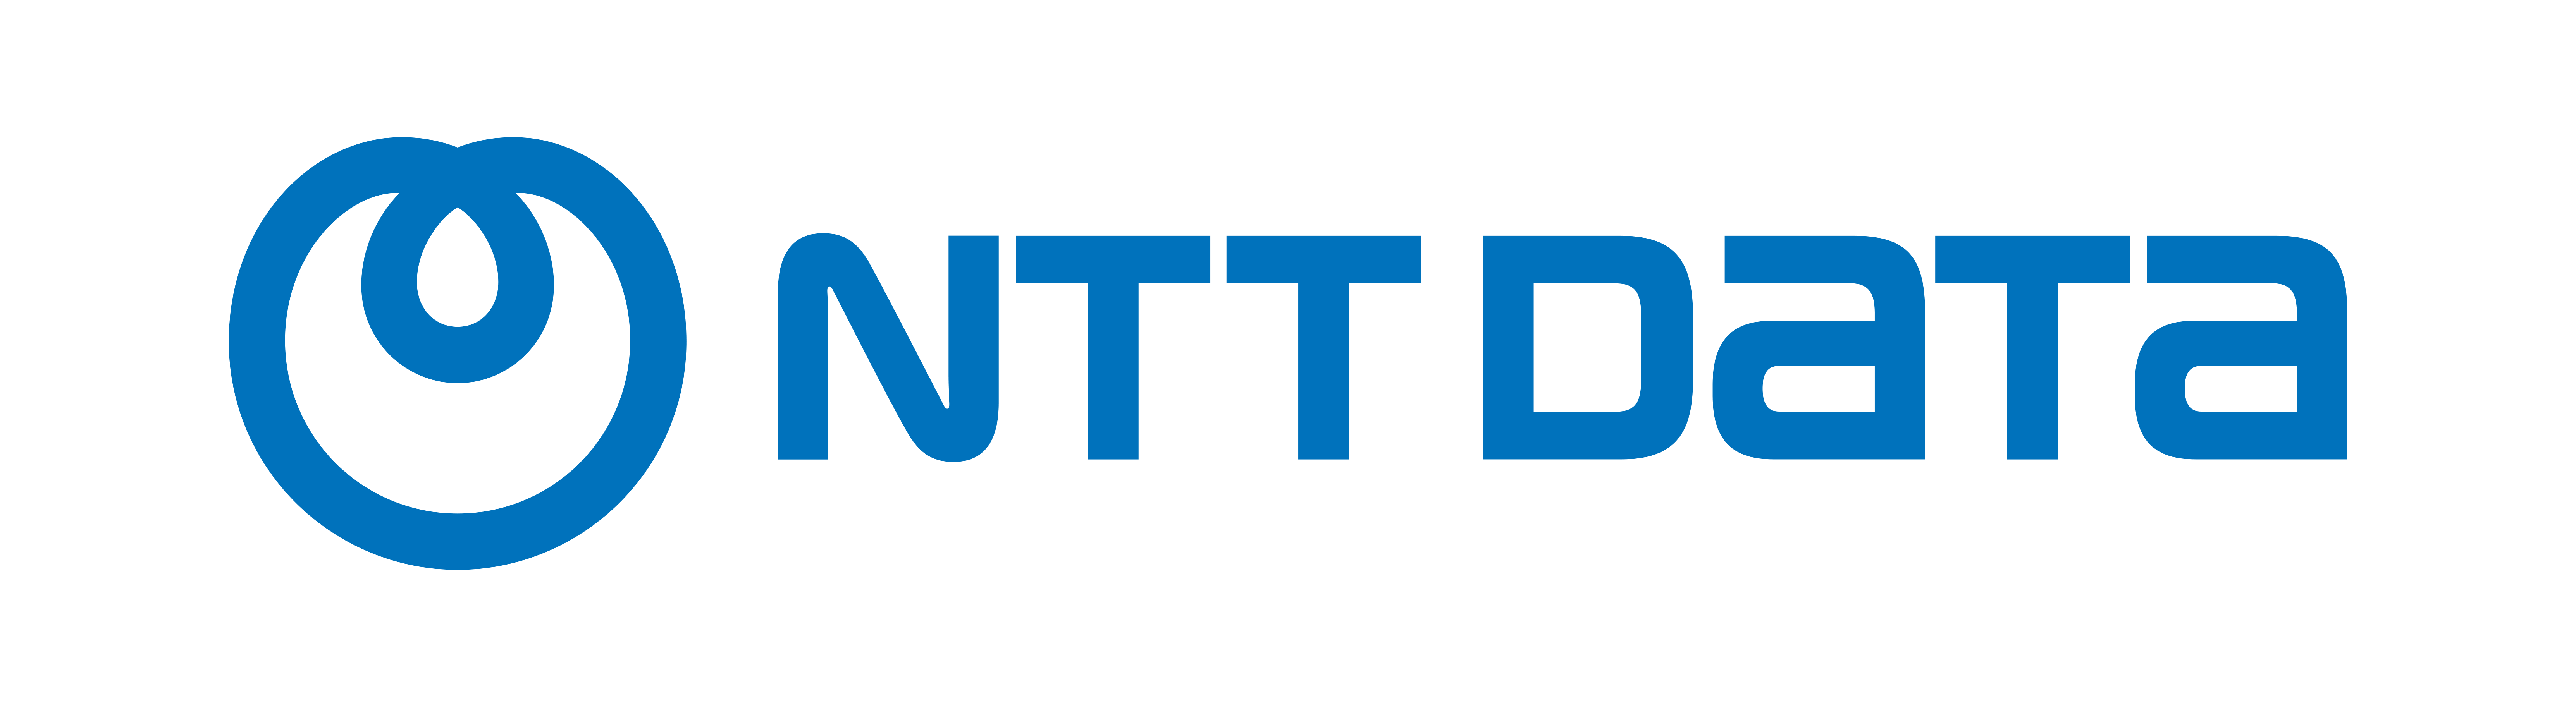 NTT_company_logo